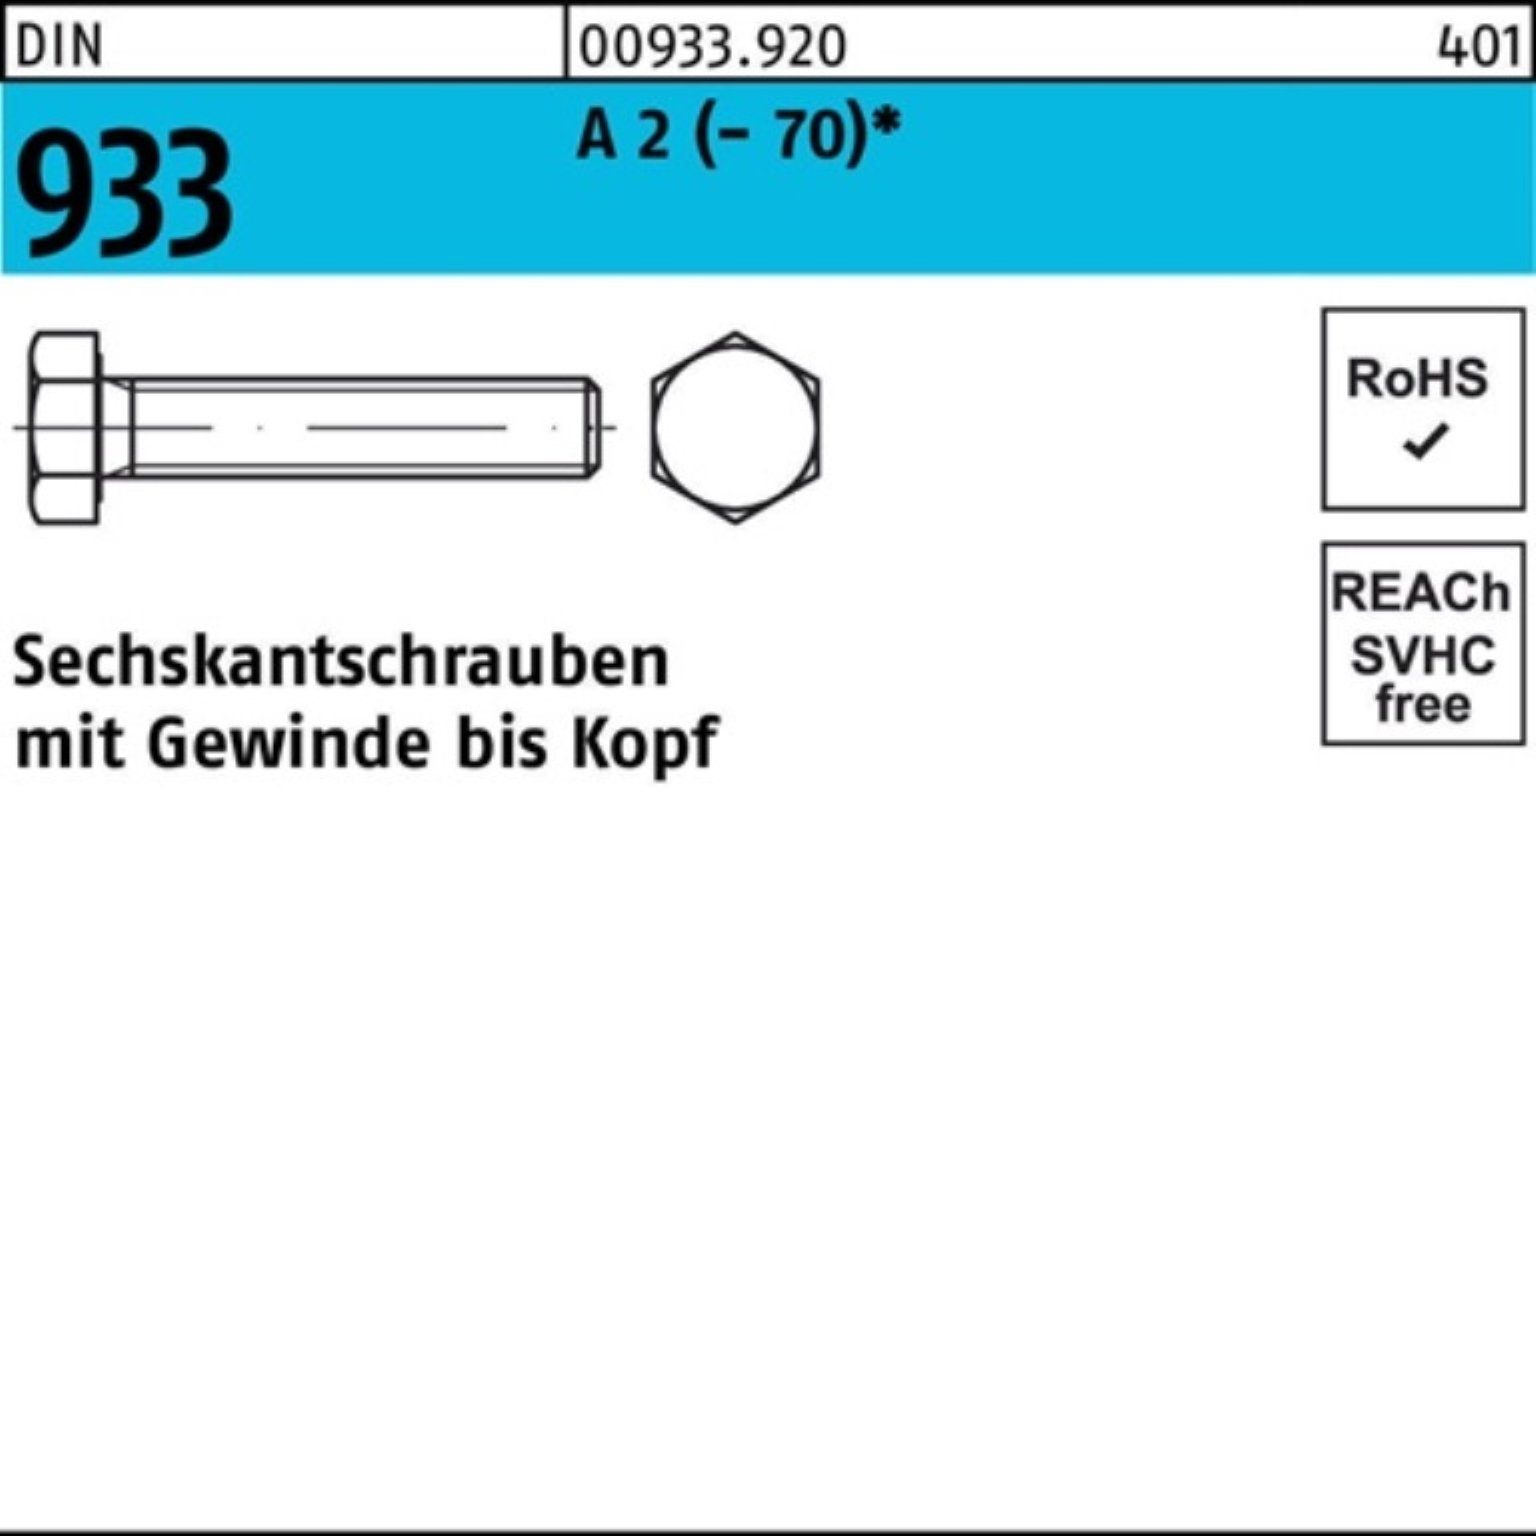 Reyher Sechskantschraube 100er Pack 933 Sechskantschraube M6x Stück A 2 65 VG 100 (70) DIN D